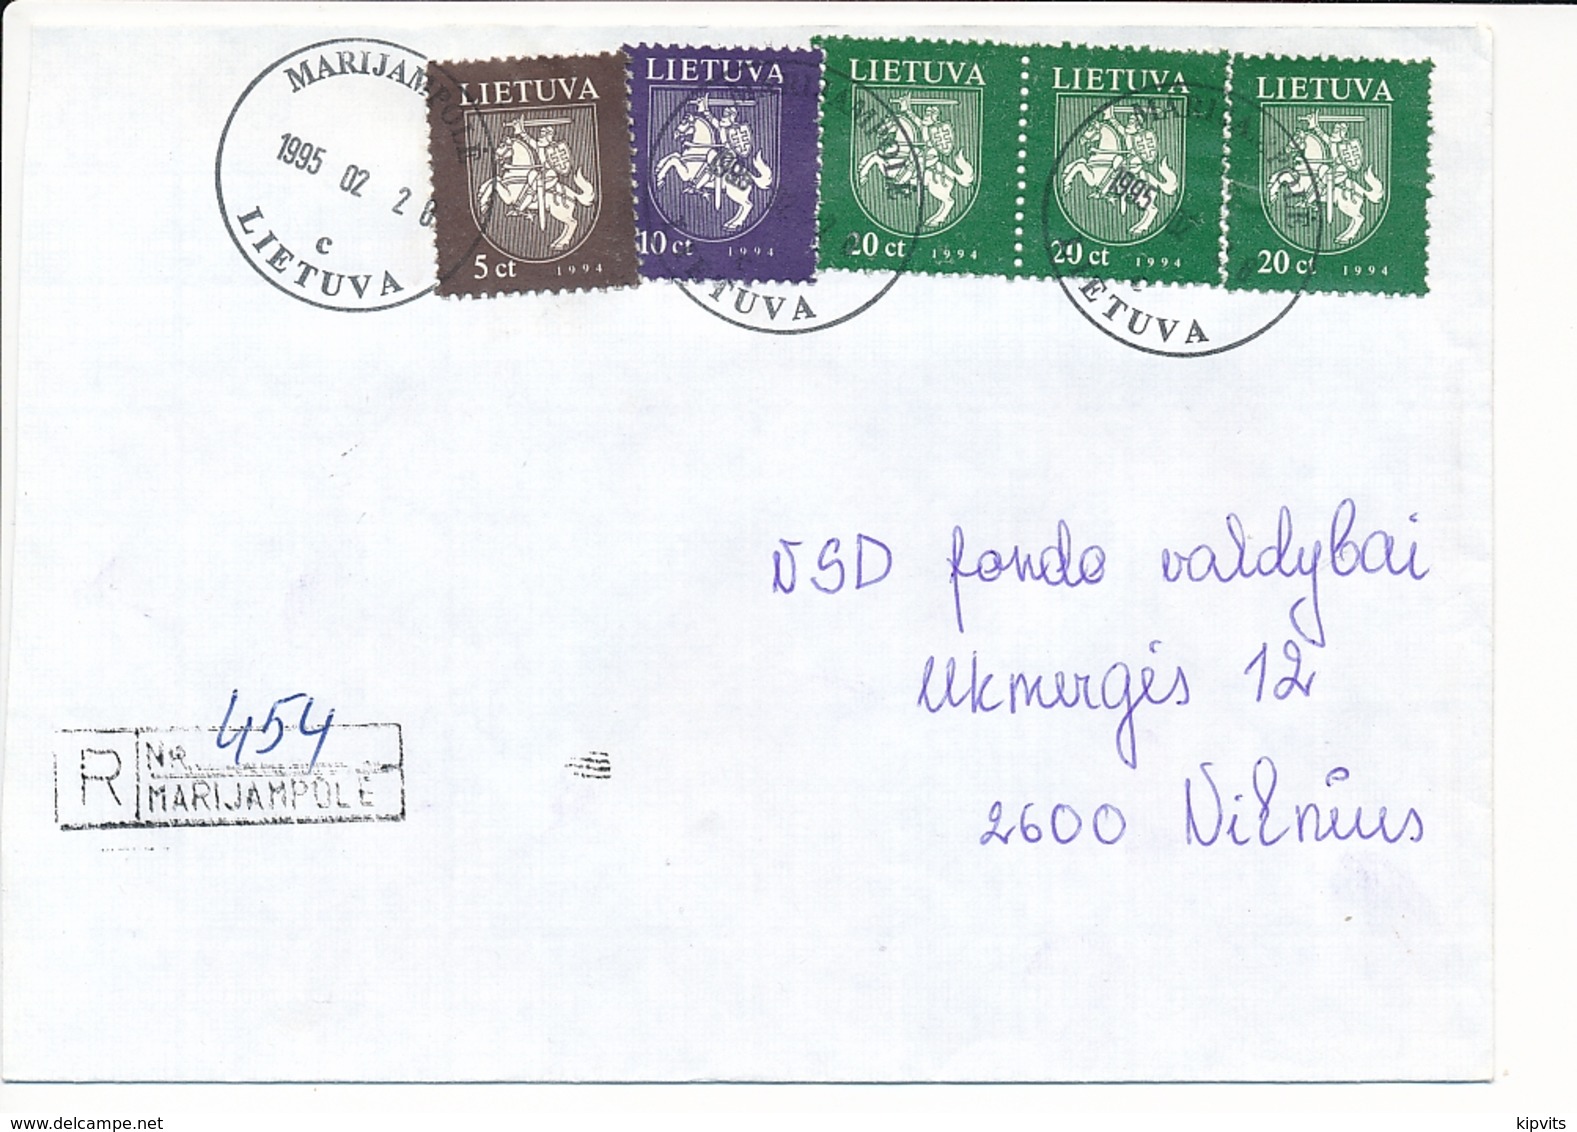 Registered Commercial Cover - 20 February 1995 Marijampolė - Lituania